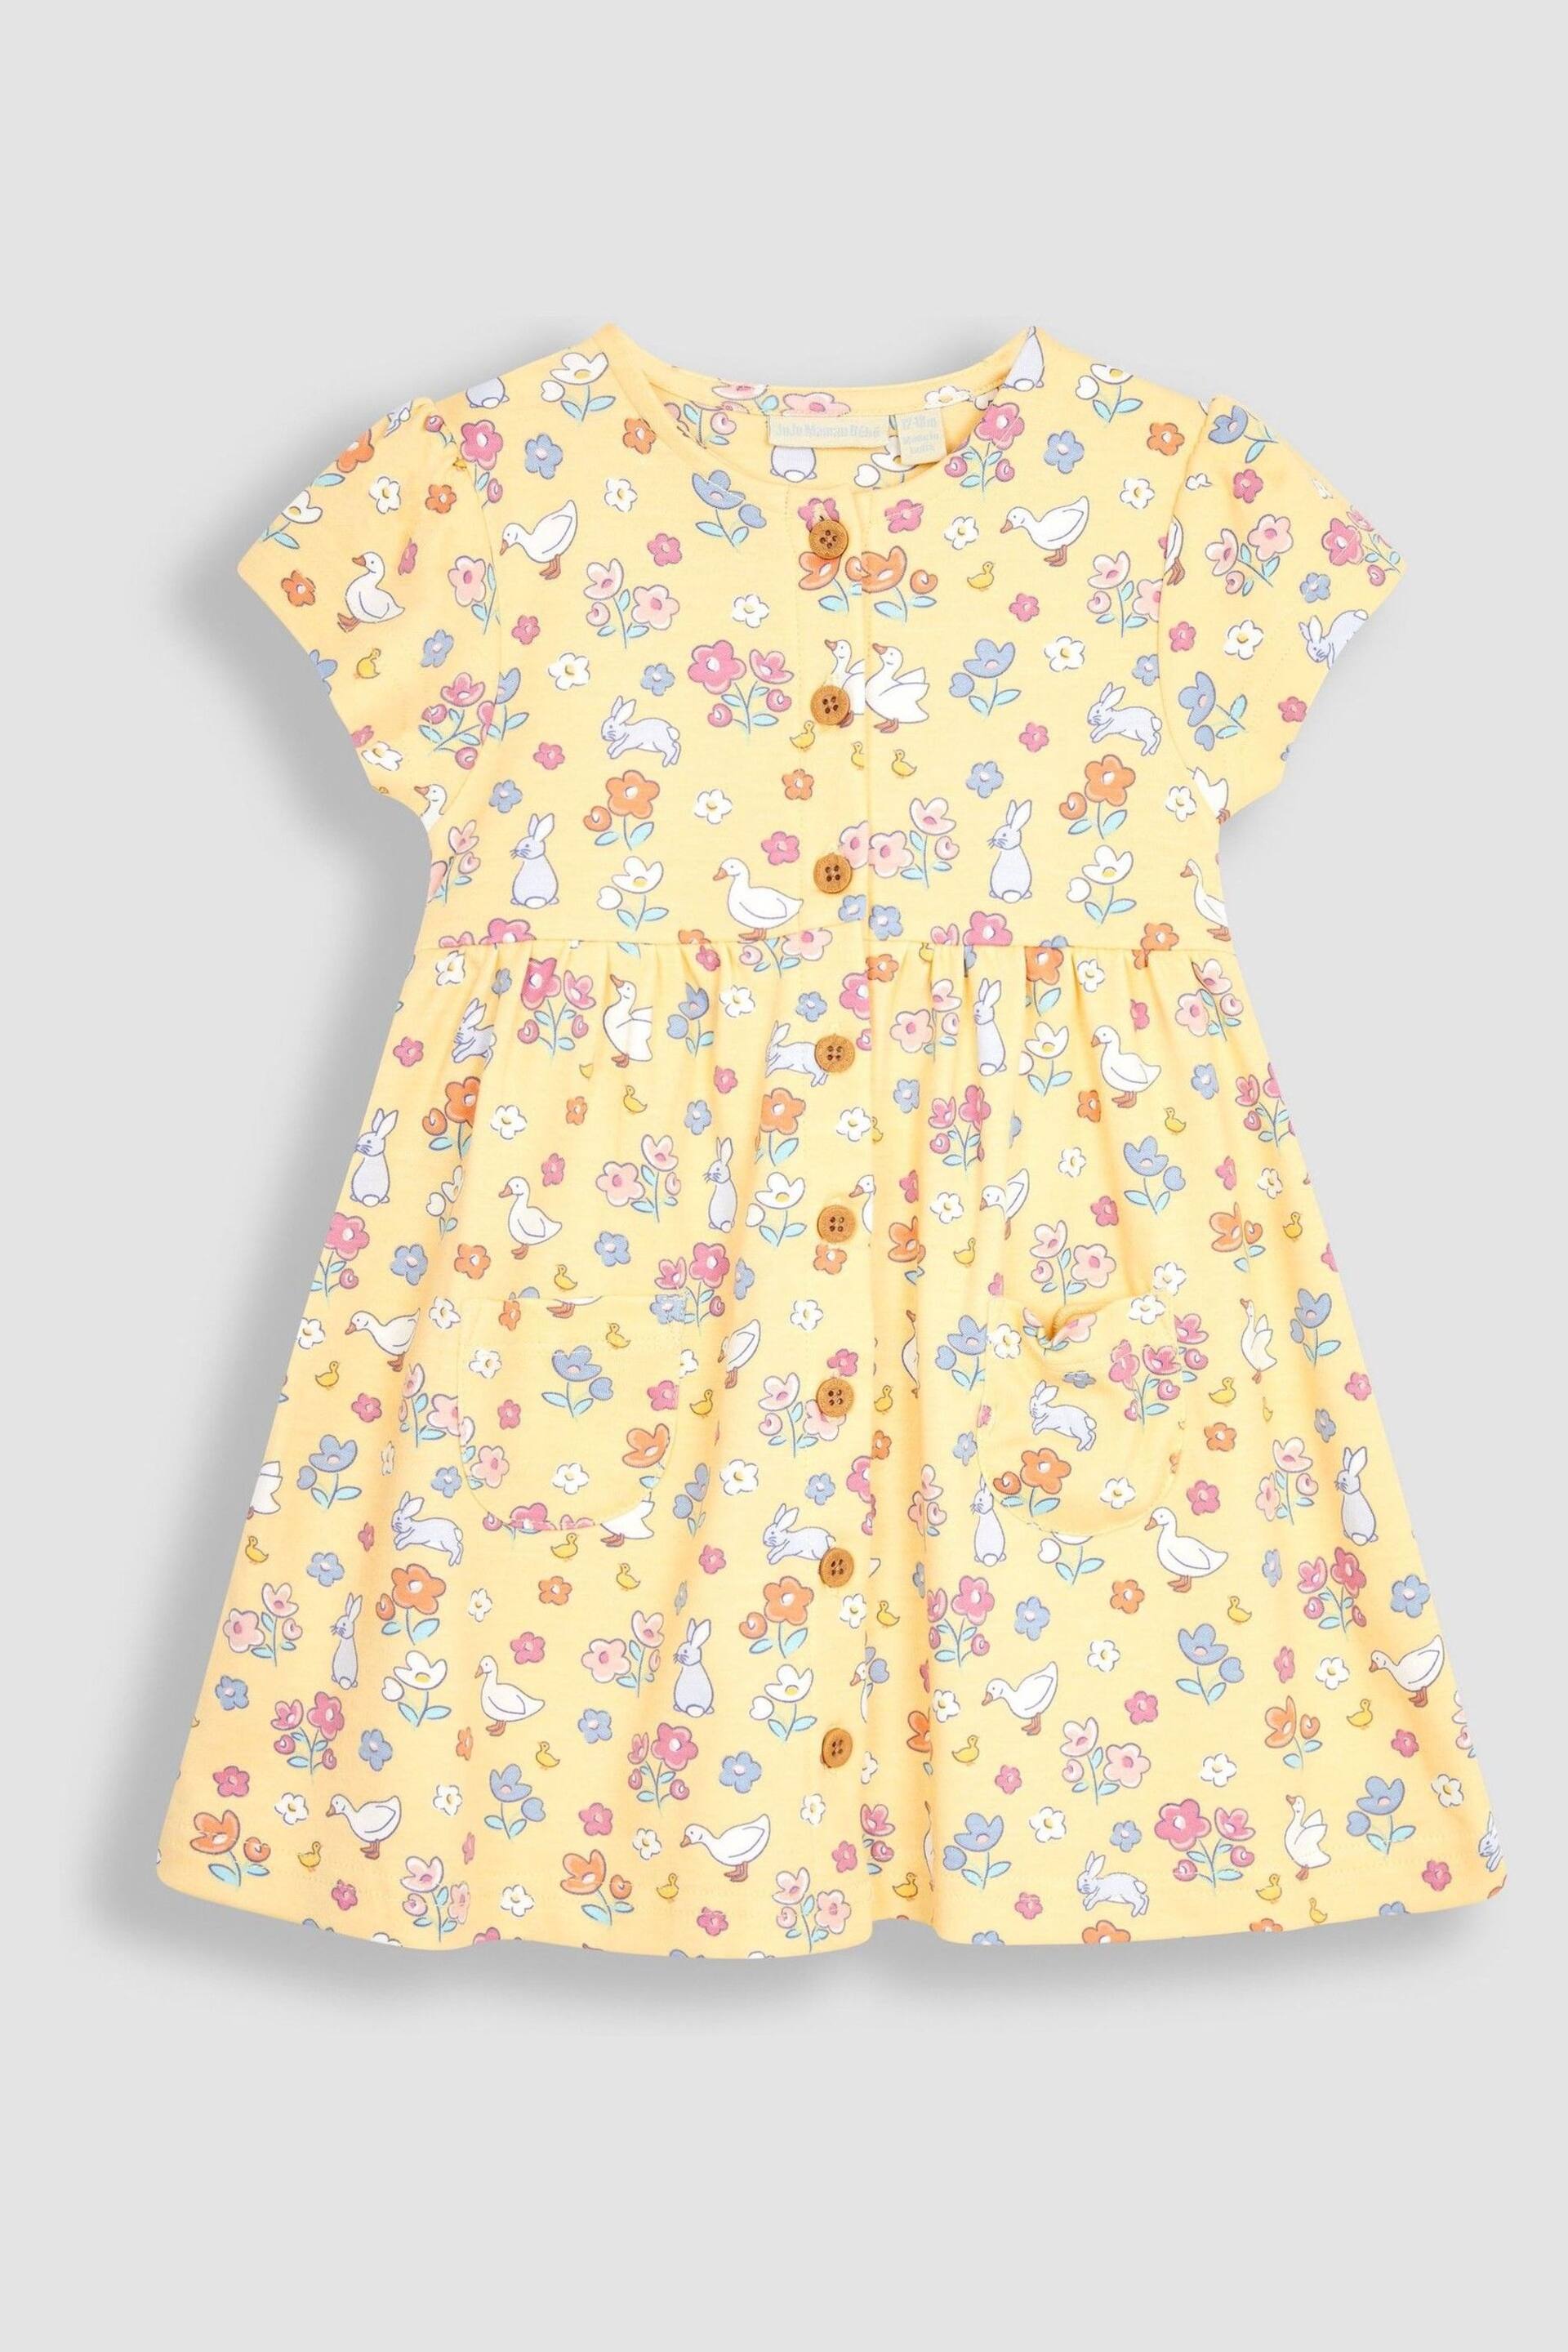 JoJo Maman Bébé Yellow Bunny & Duck Button Through Pet In Pocket Jersey Dress - Image 2 of 3